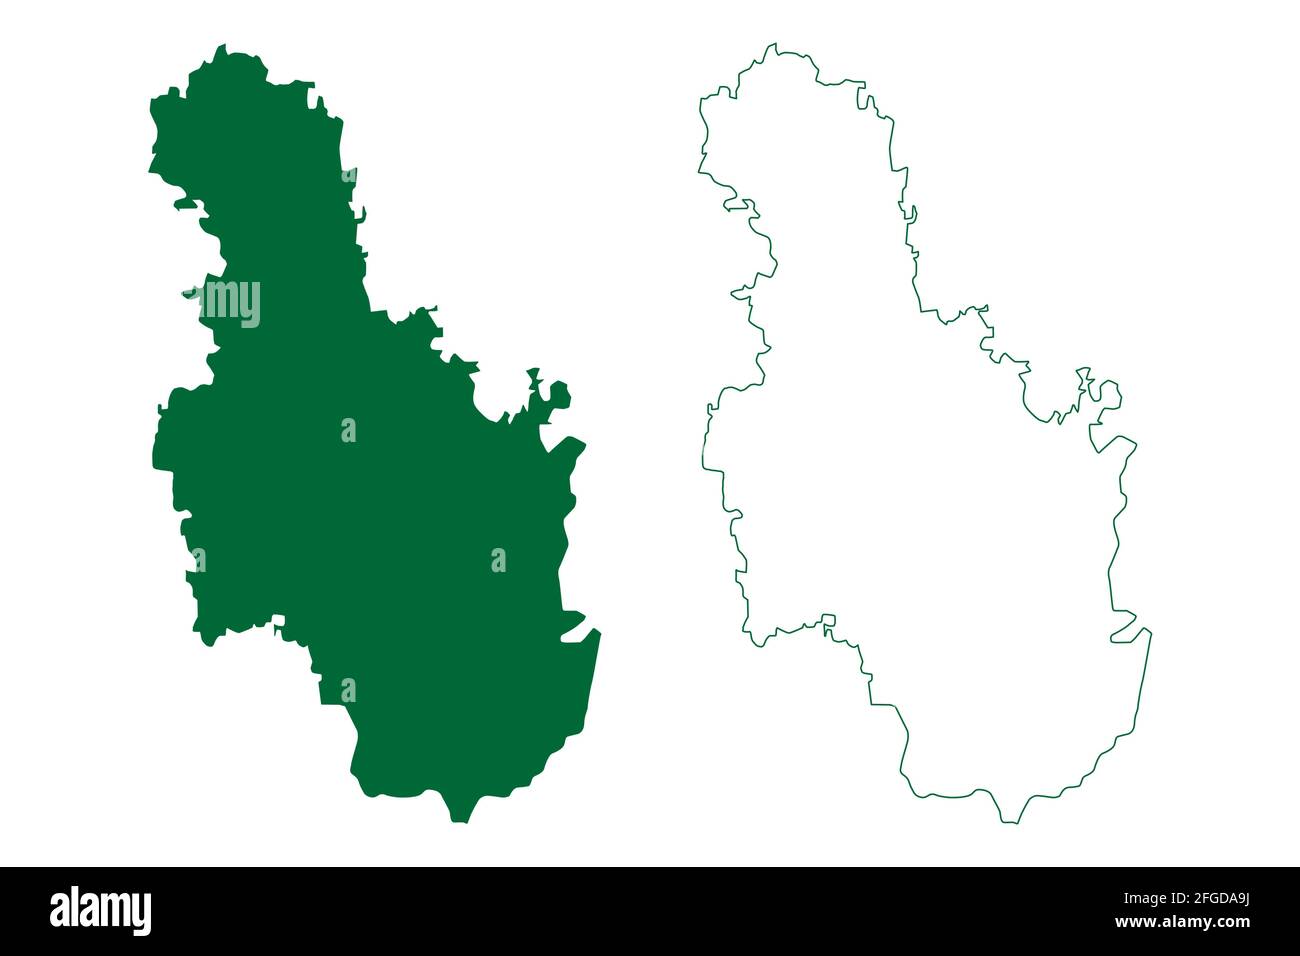 Distretto di Ramanagara (Stato di Karnataka, Repubblica dell'India, divisione di Bangalore) illustrazione vettoriale della mappa, schizzo della mappa di Ramanagara Illustrazione Vettoriale